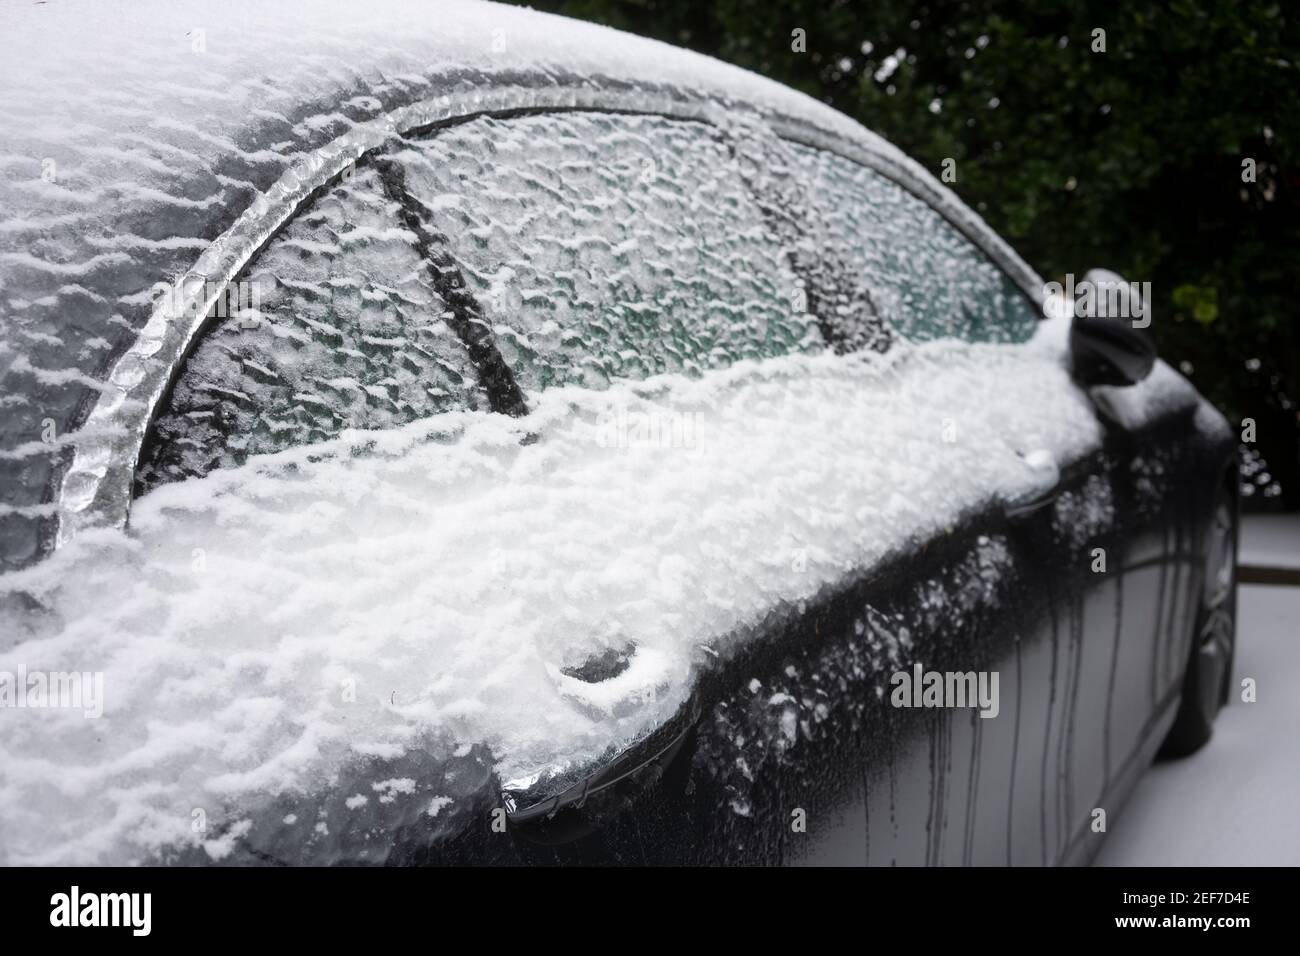 Chiusura della maniglia della porta congelata e dei finestrini di un'auto per le strade dopo una tempesta invernale di neve e pioggia gelida. Foto Stock